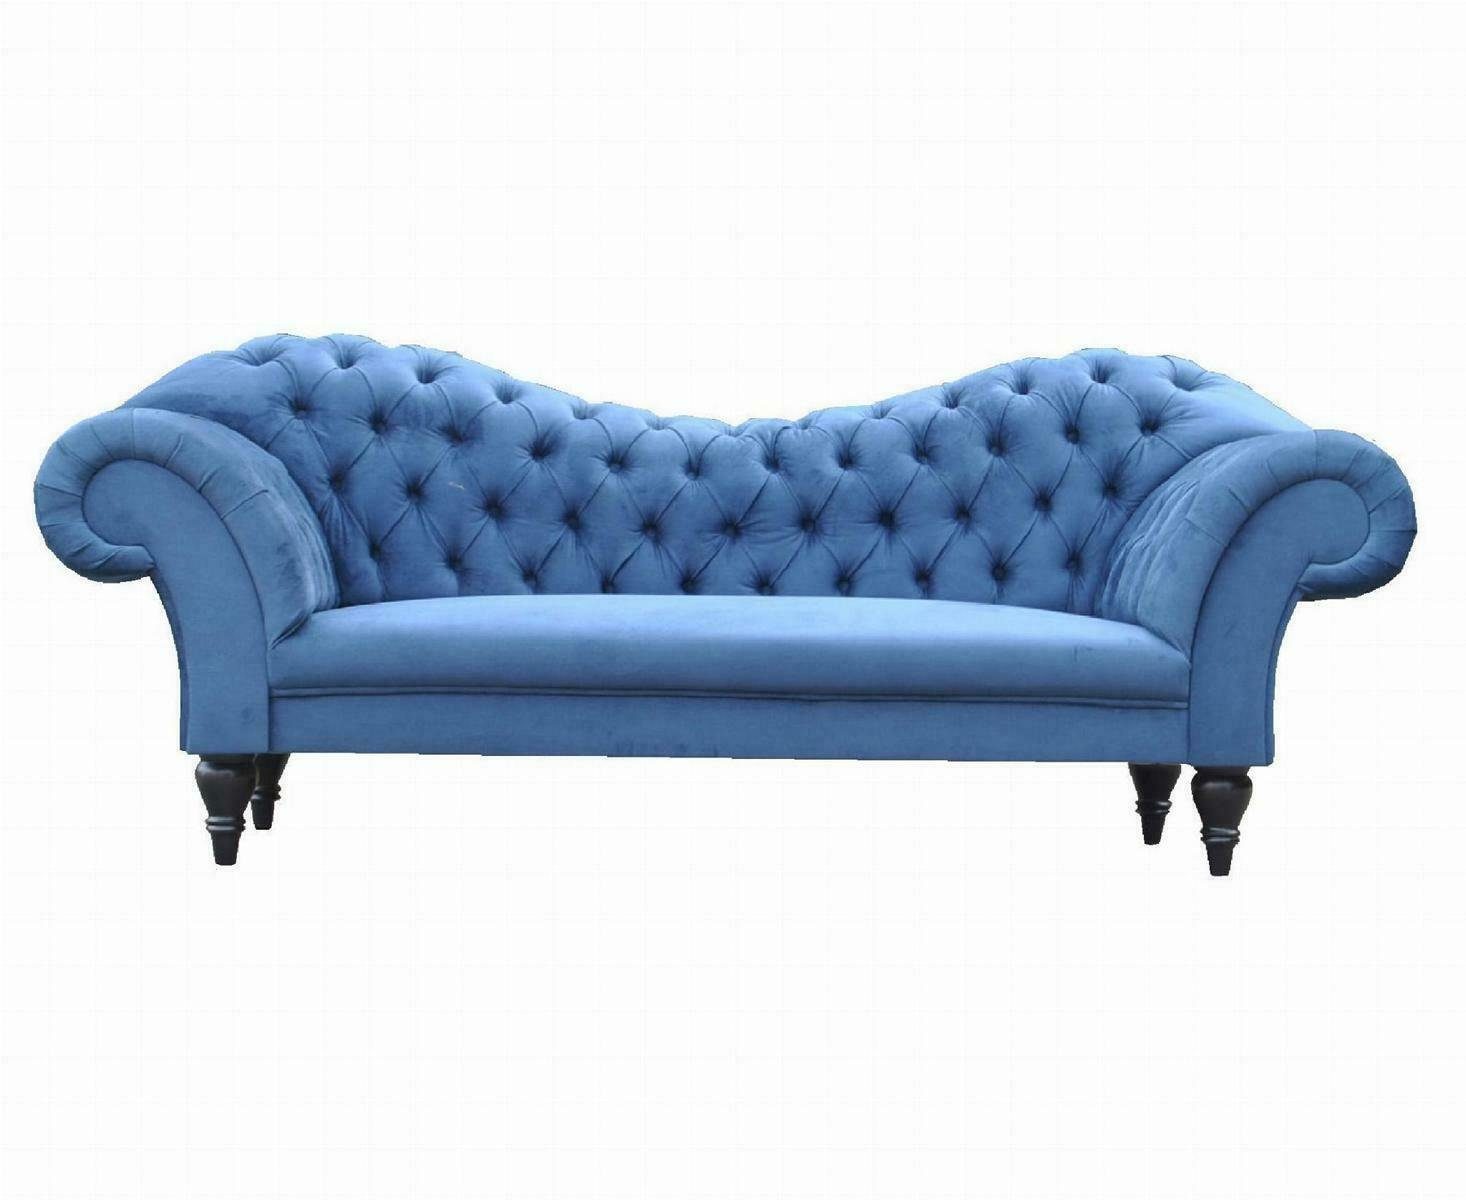 JVmoebel 3-Sitzer Chesterfield Dreisitzer Design in Textil Sitzer, Sitzer 3 Made Sofa Europe